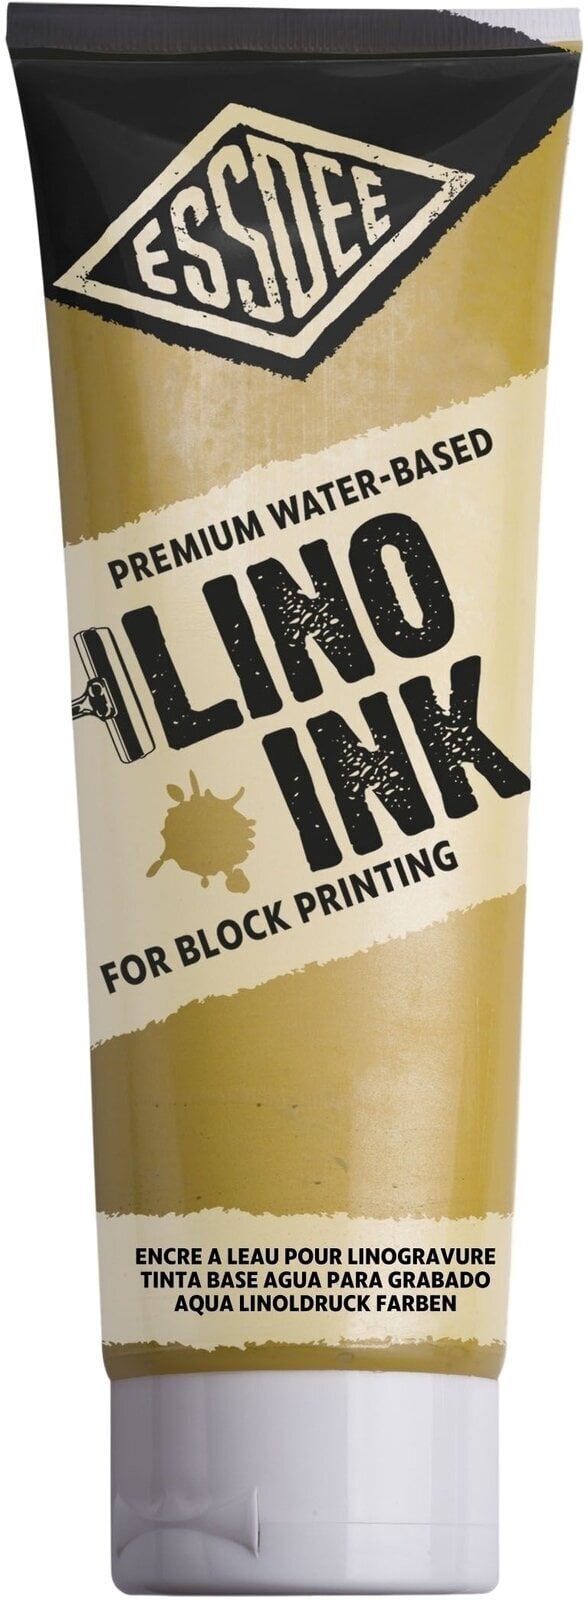 Pintura para linograbado Essdee Block Printing Ink Pintura para linograbado Pearlescent Yellow 300 ml